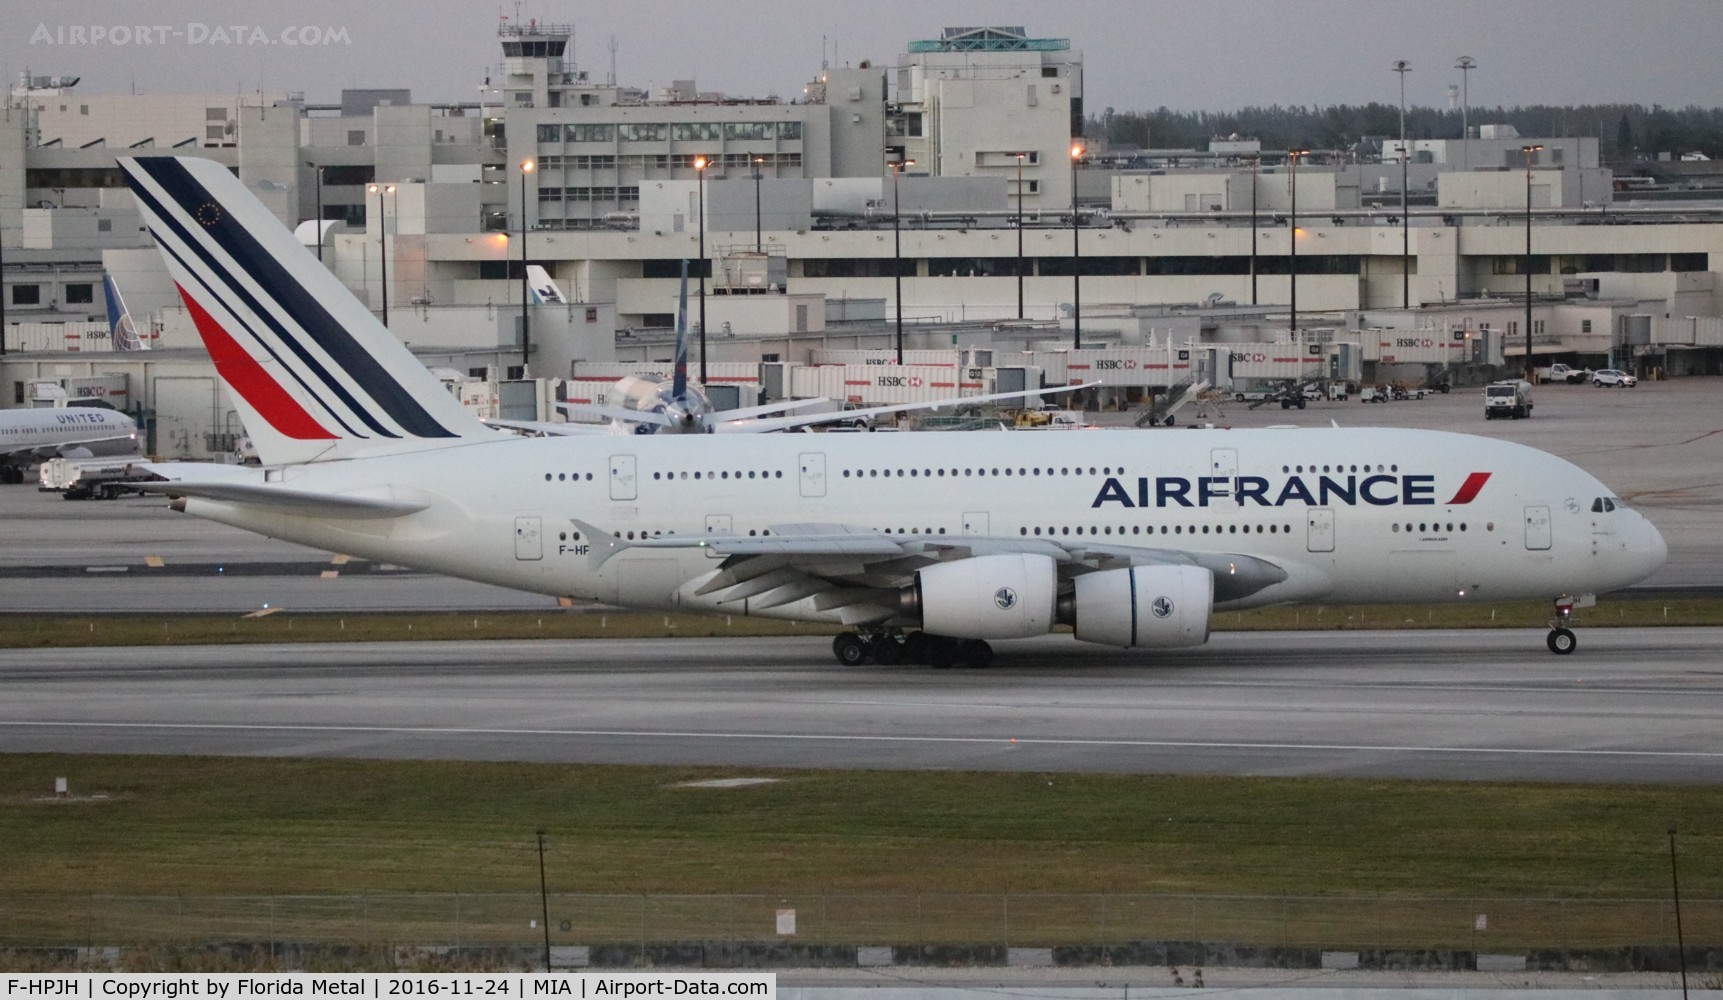 F-HPJH, 2011 Airbus A380-861 C/N 099, Air France